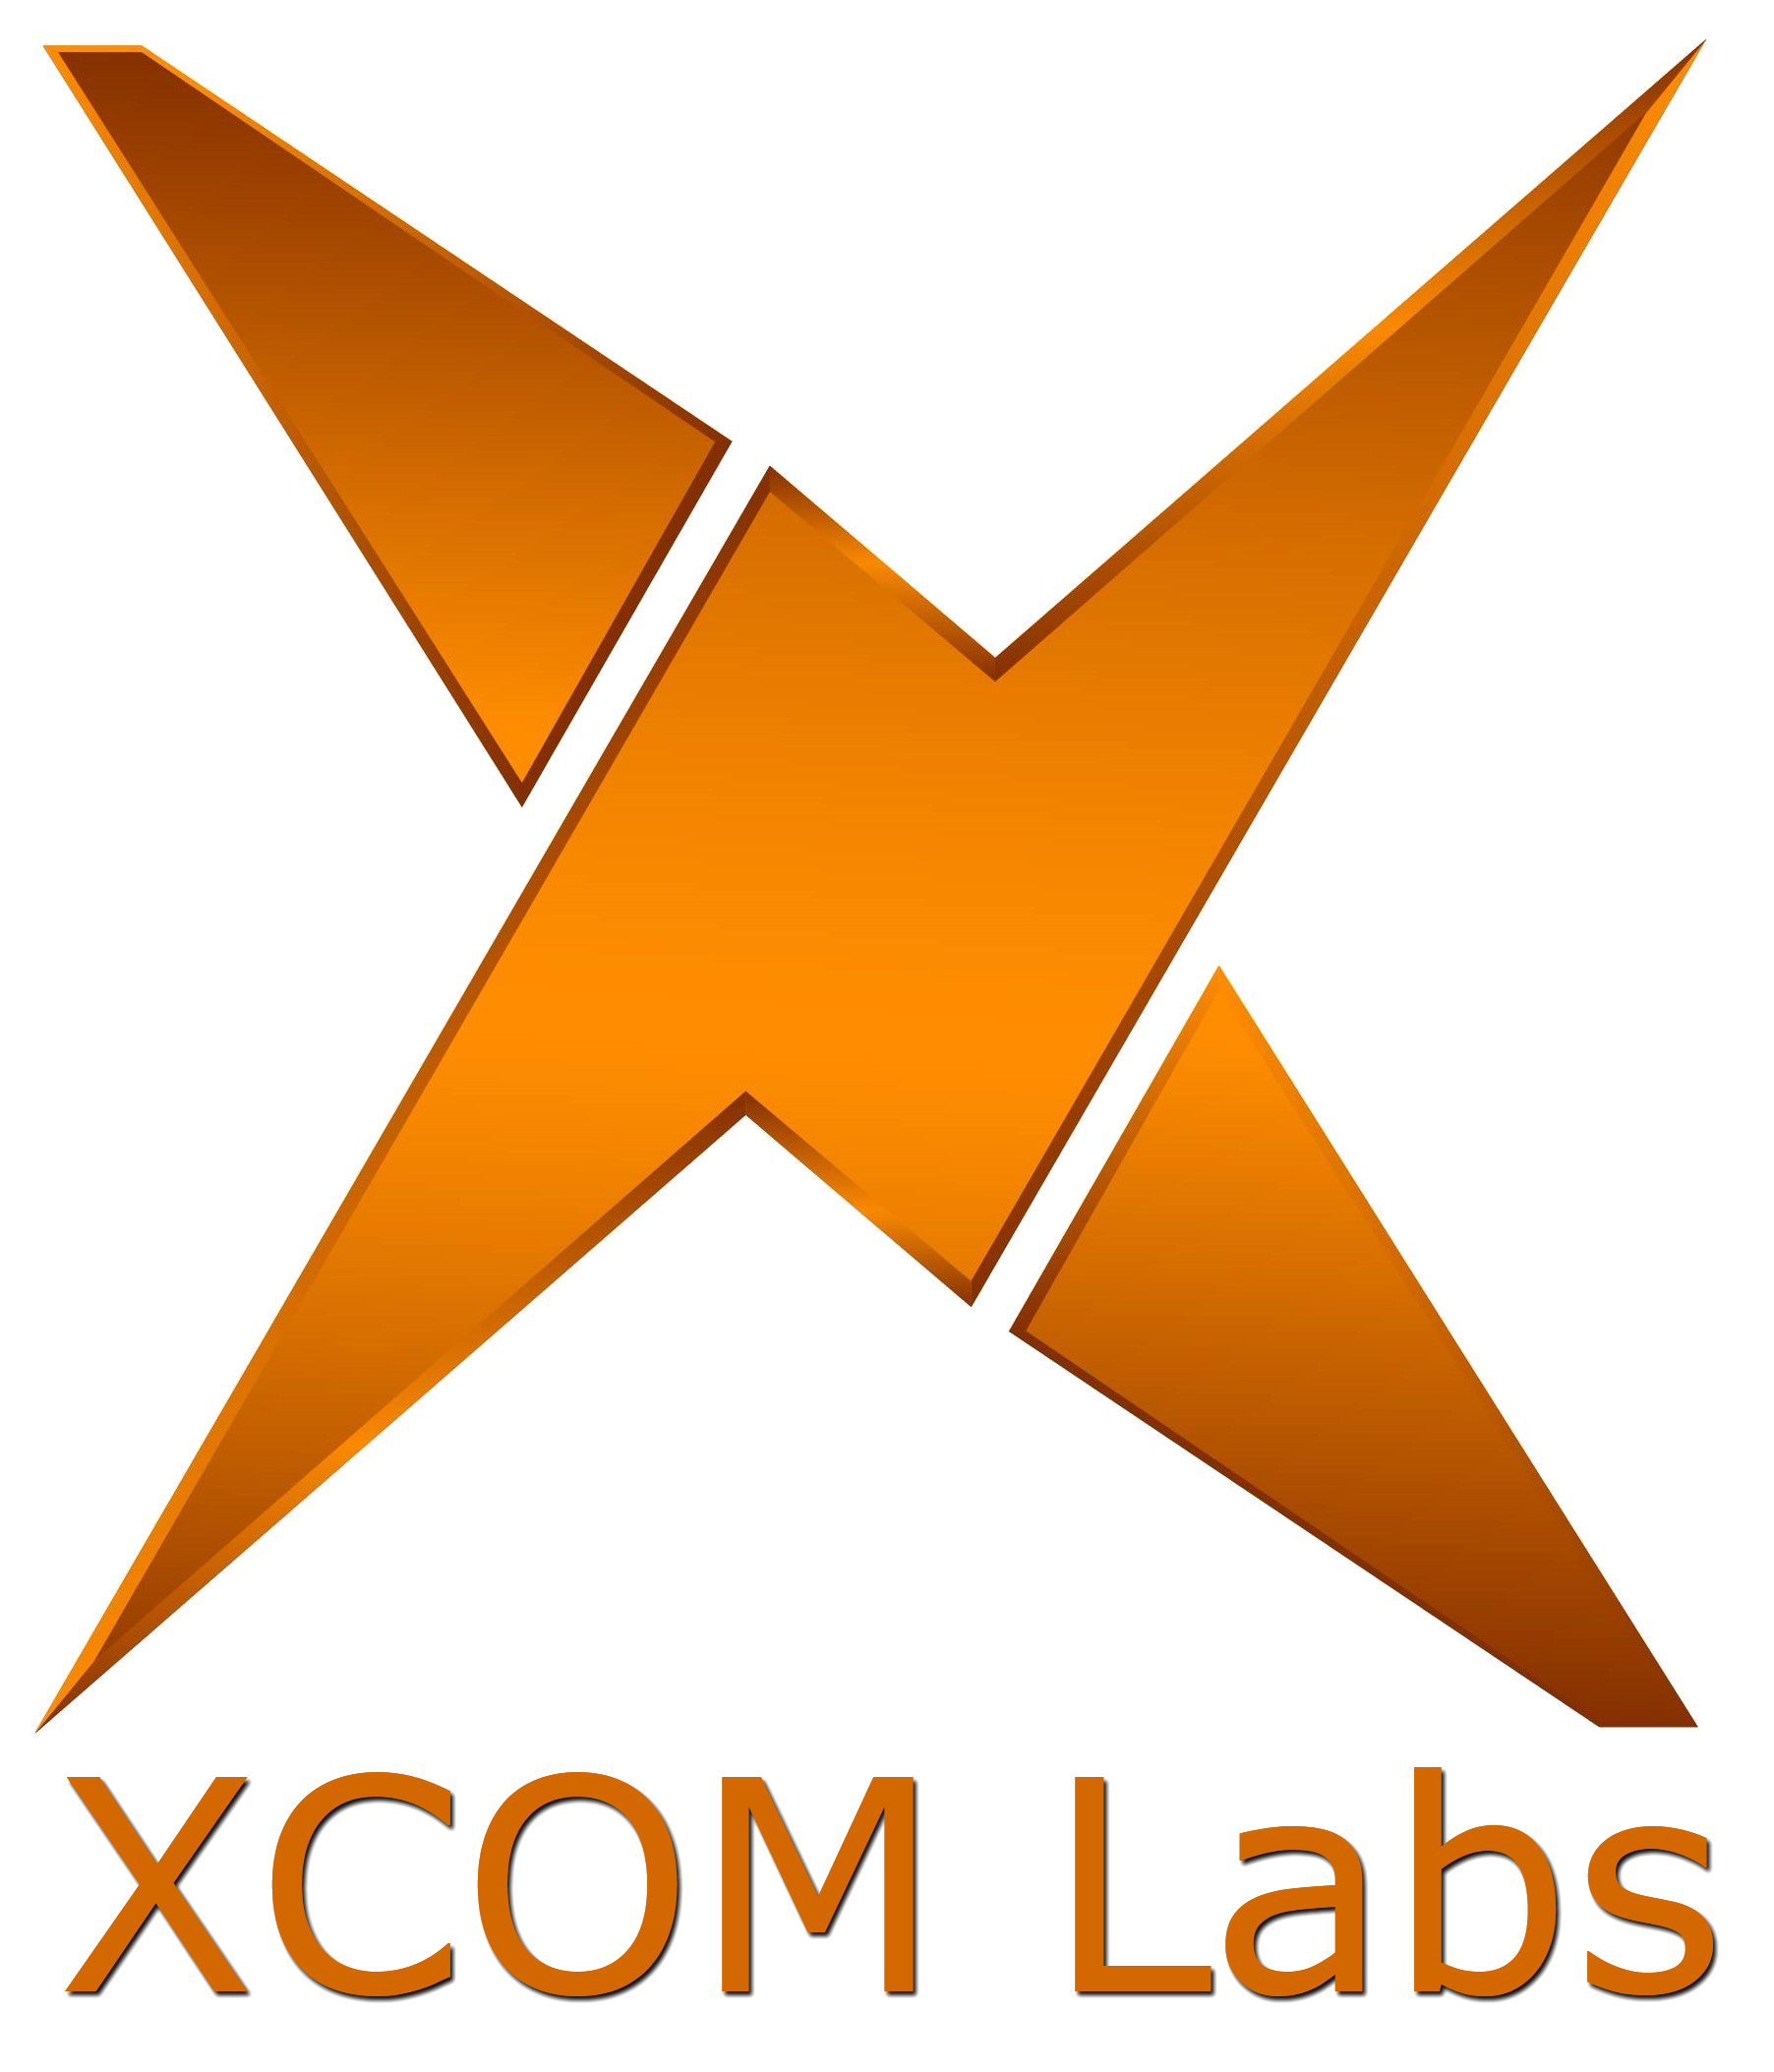 XCOM logo